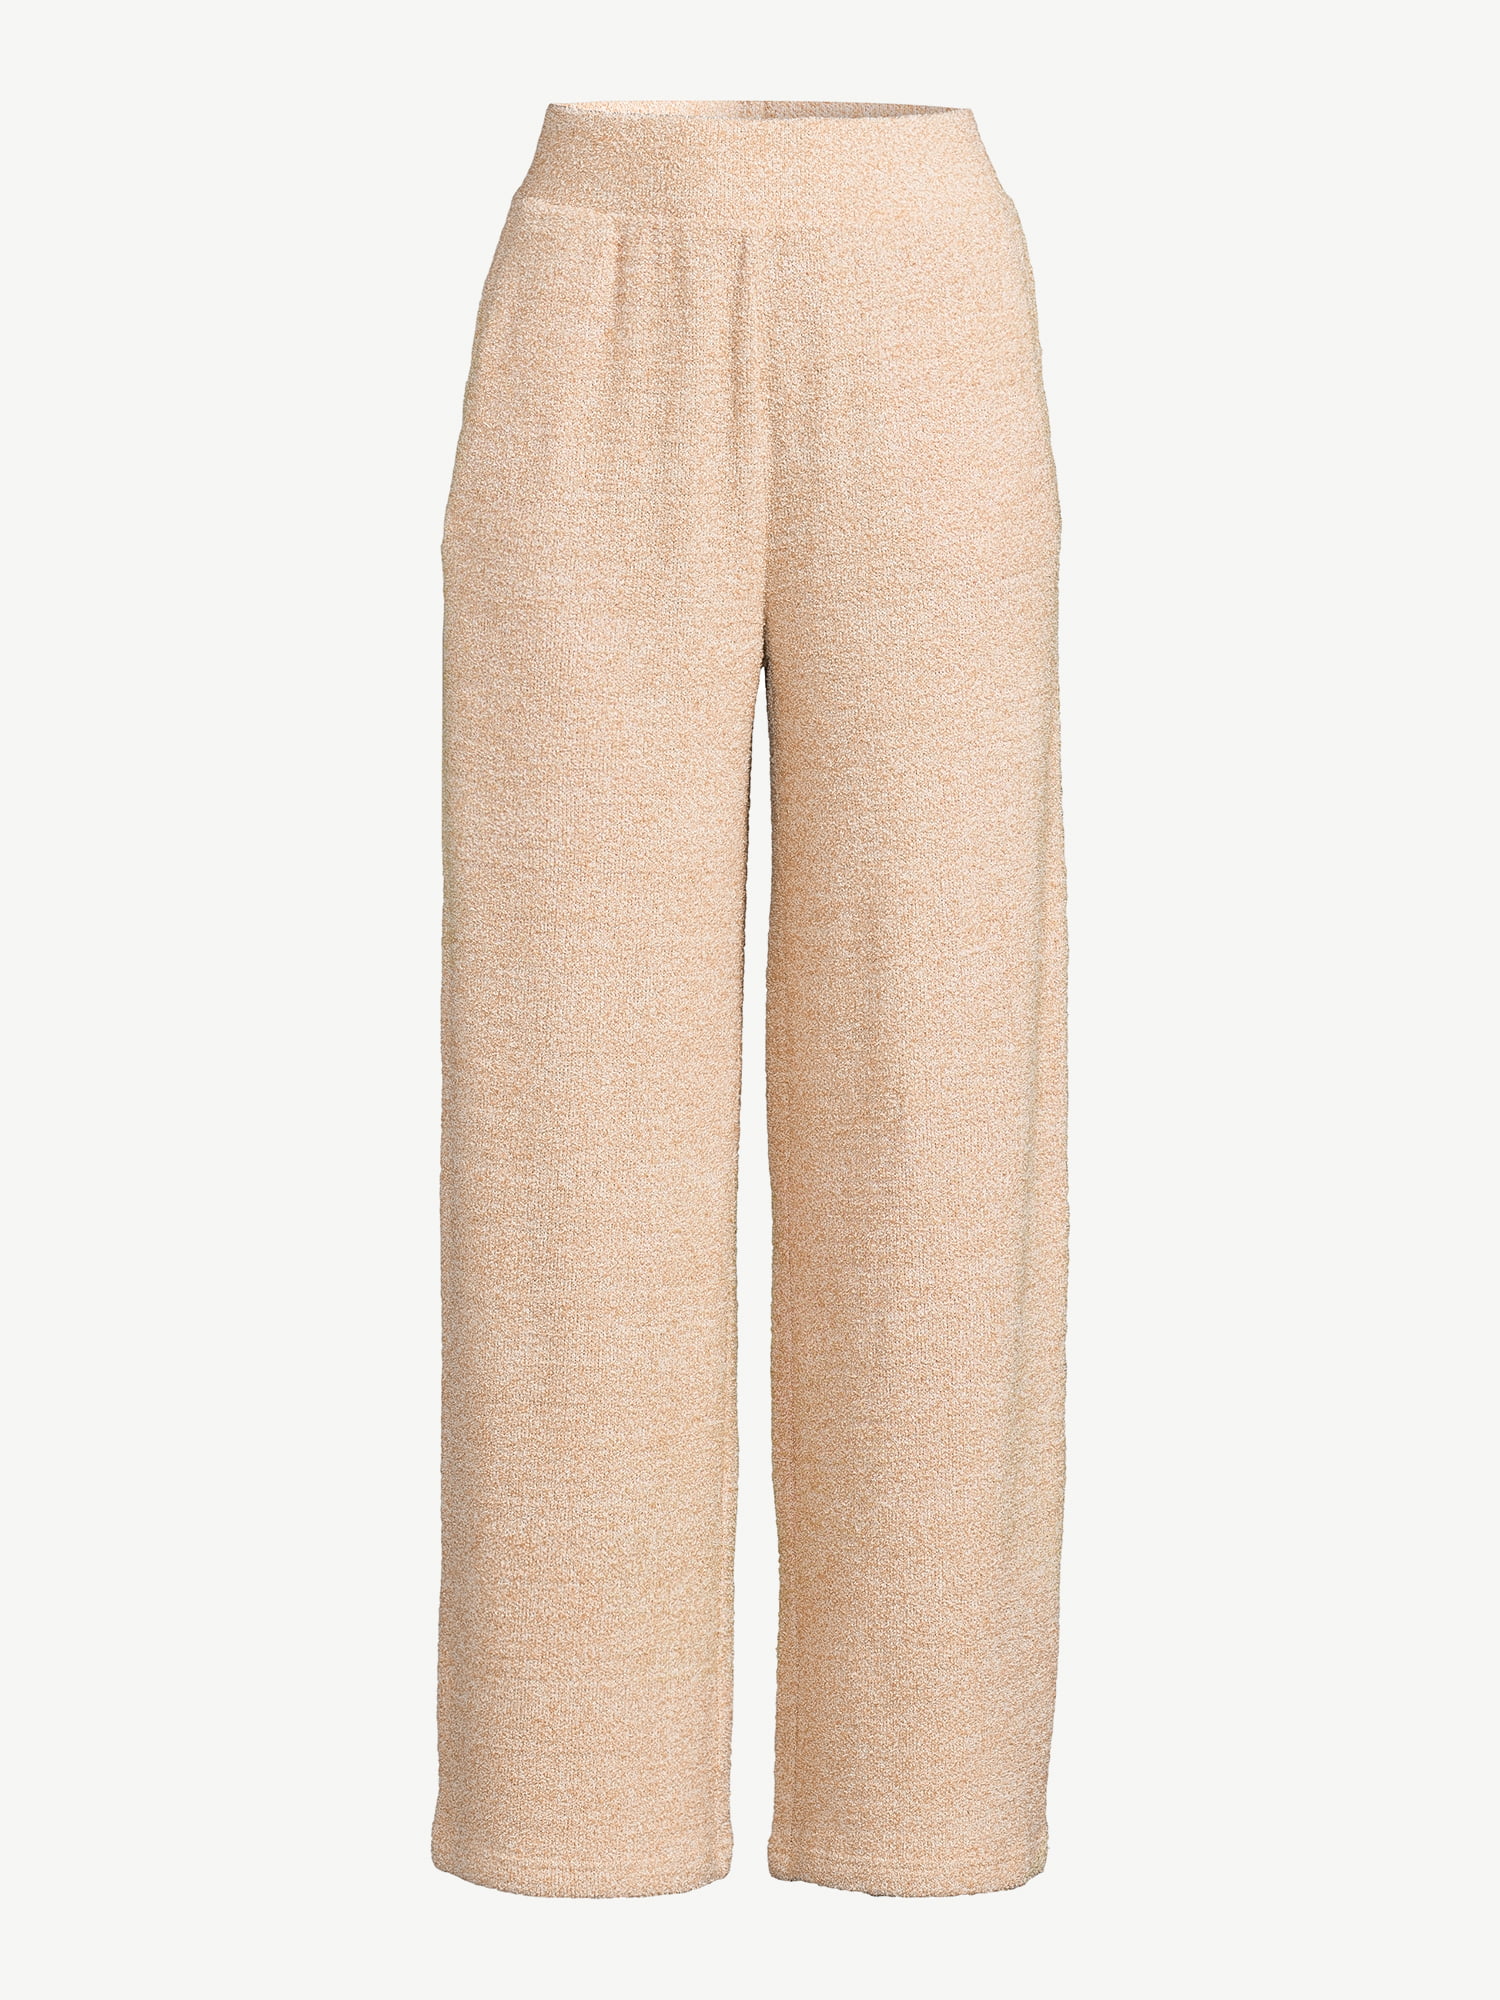 Papinelle Ombré Wide Leg Cotton Pajama Pants in Spearmint